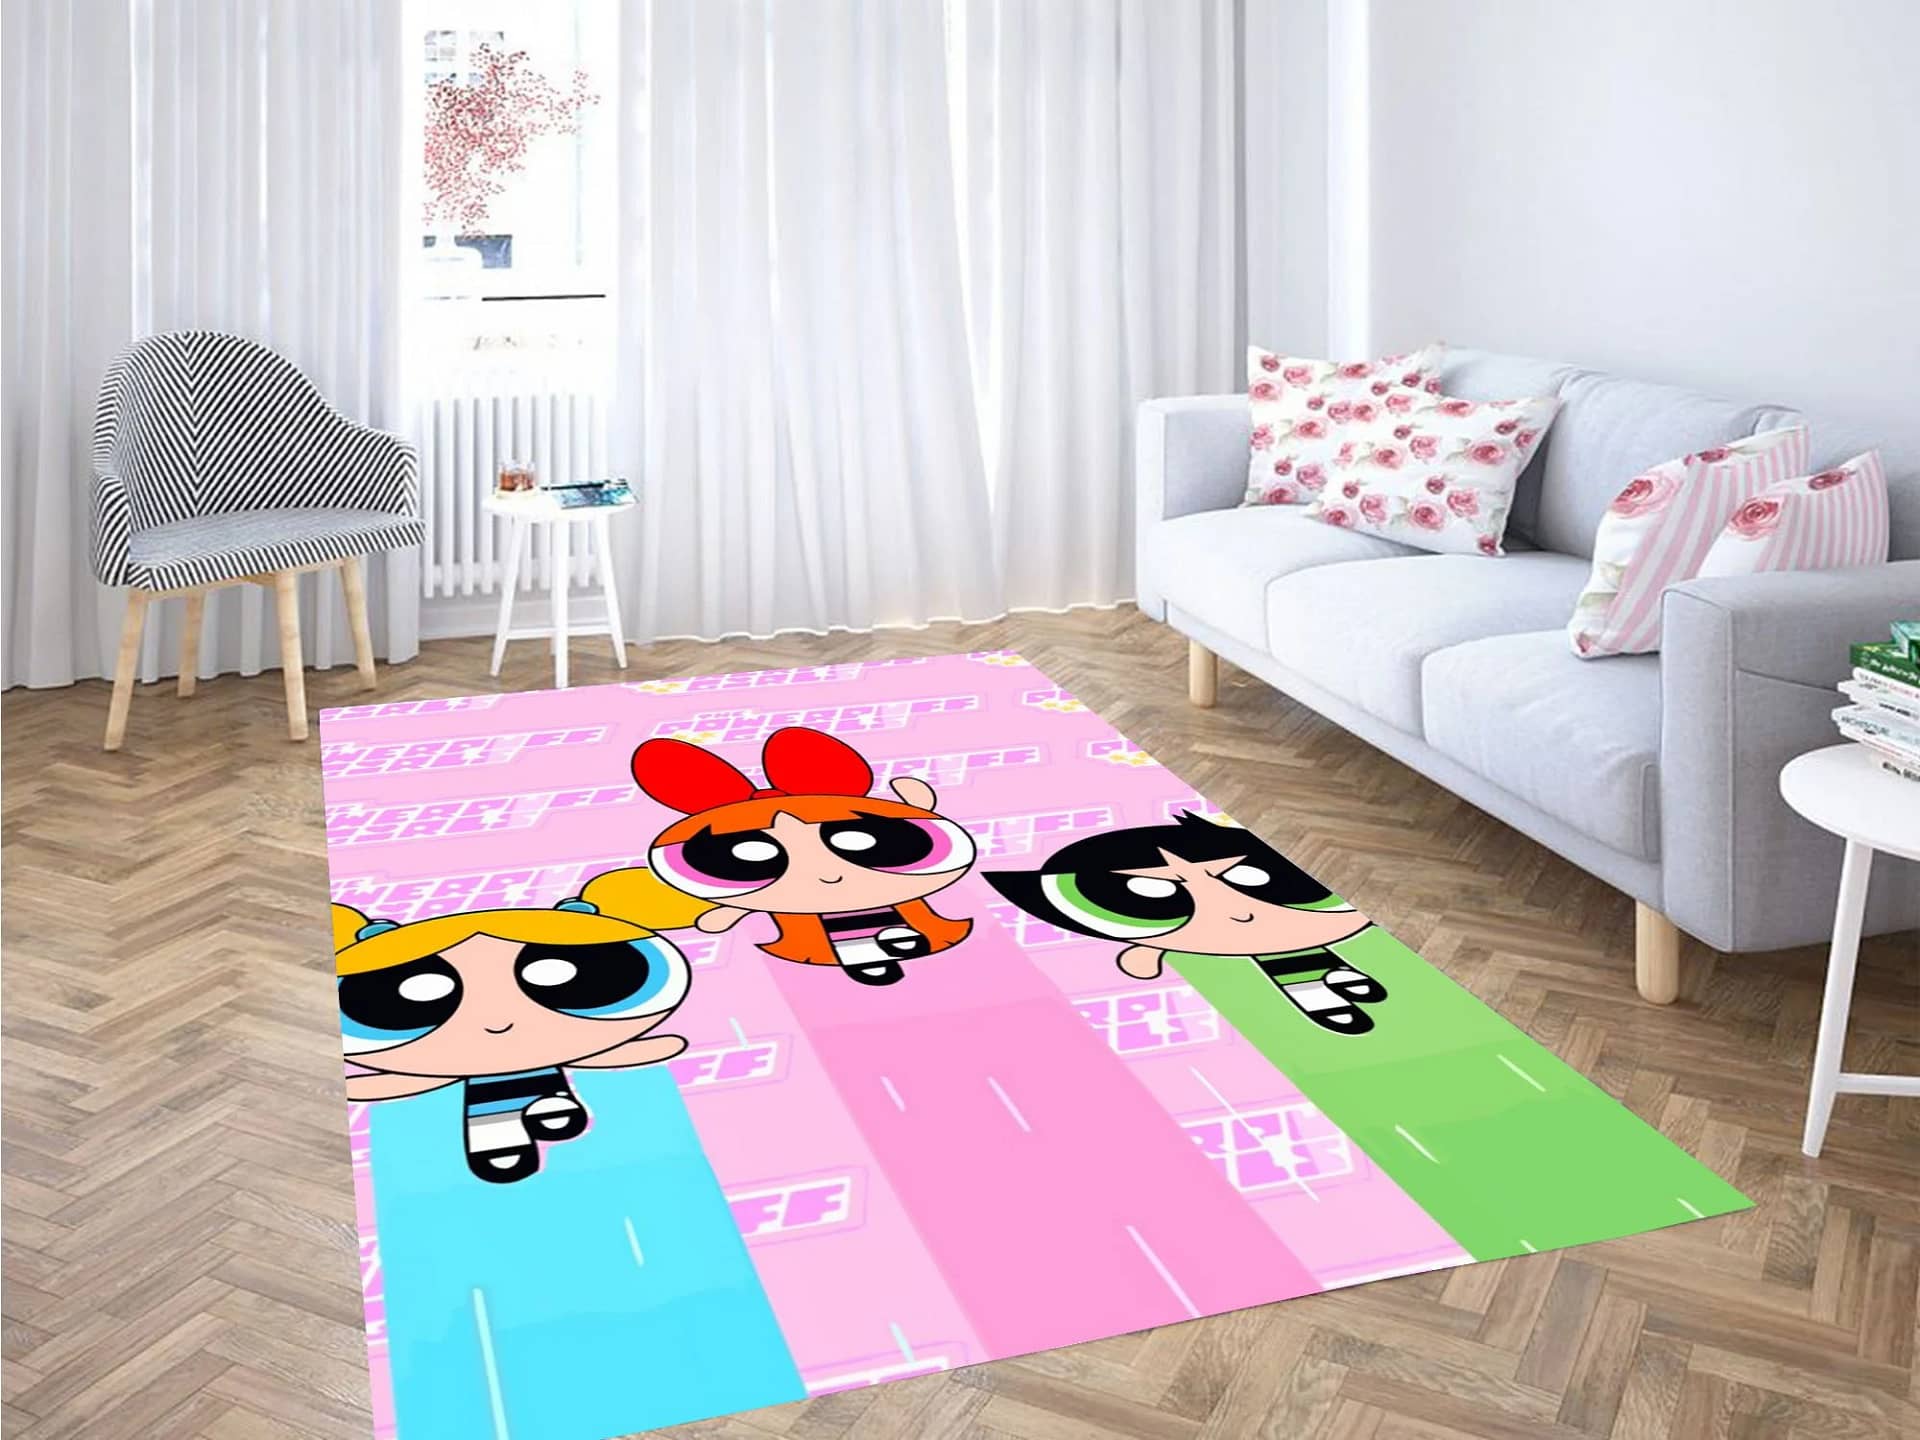 The Powerpuff Girls Character Carpet Rug